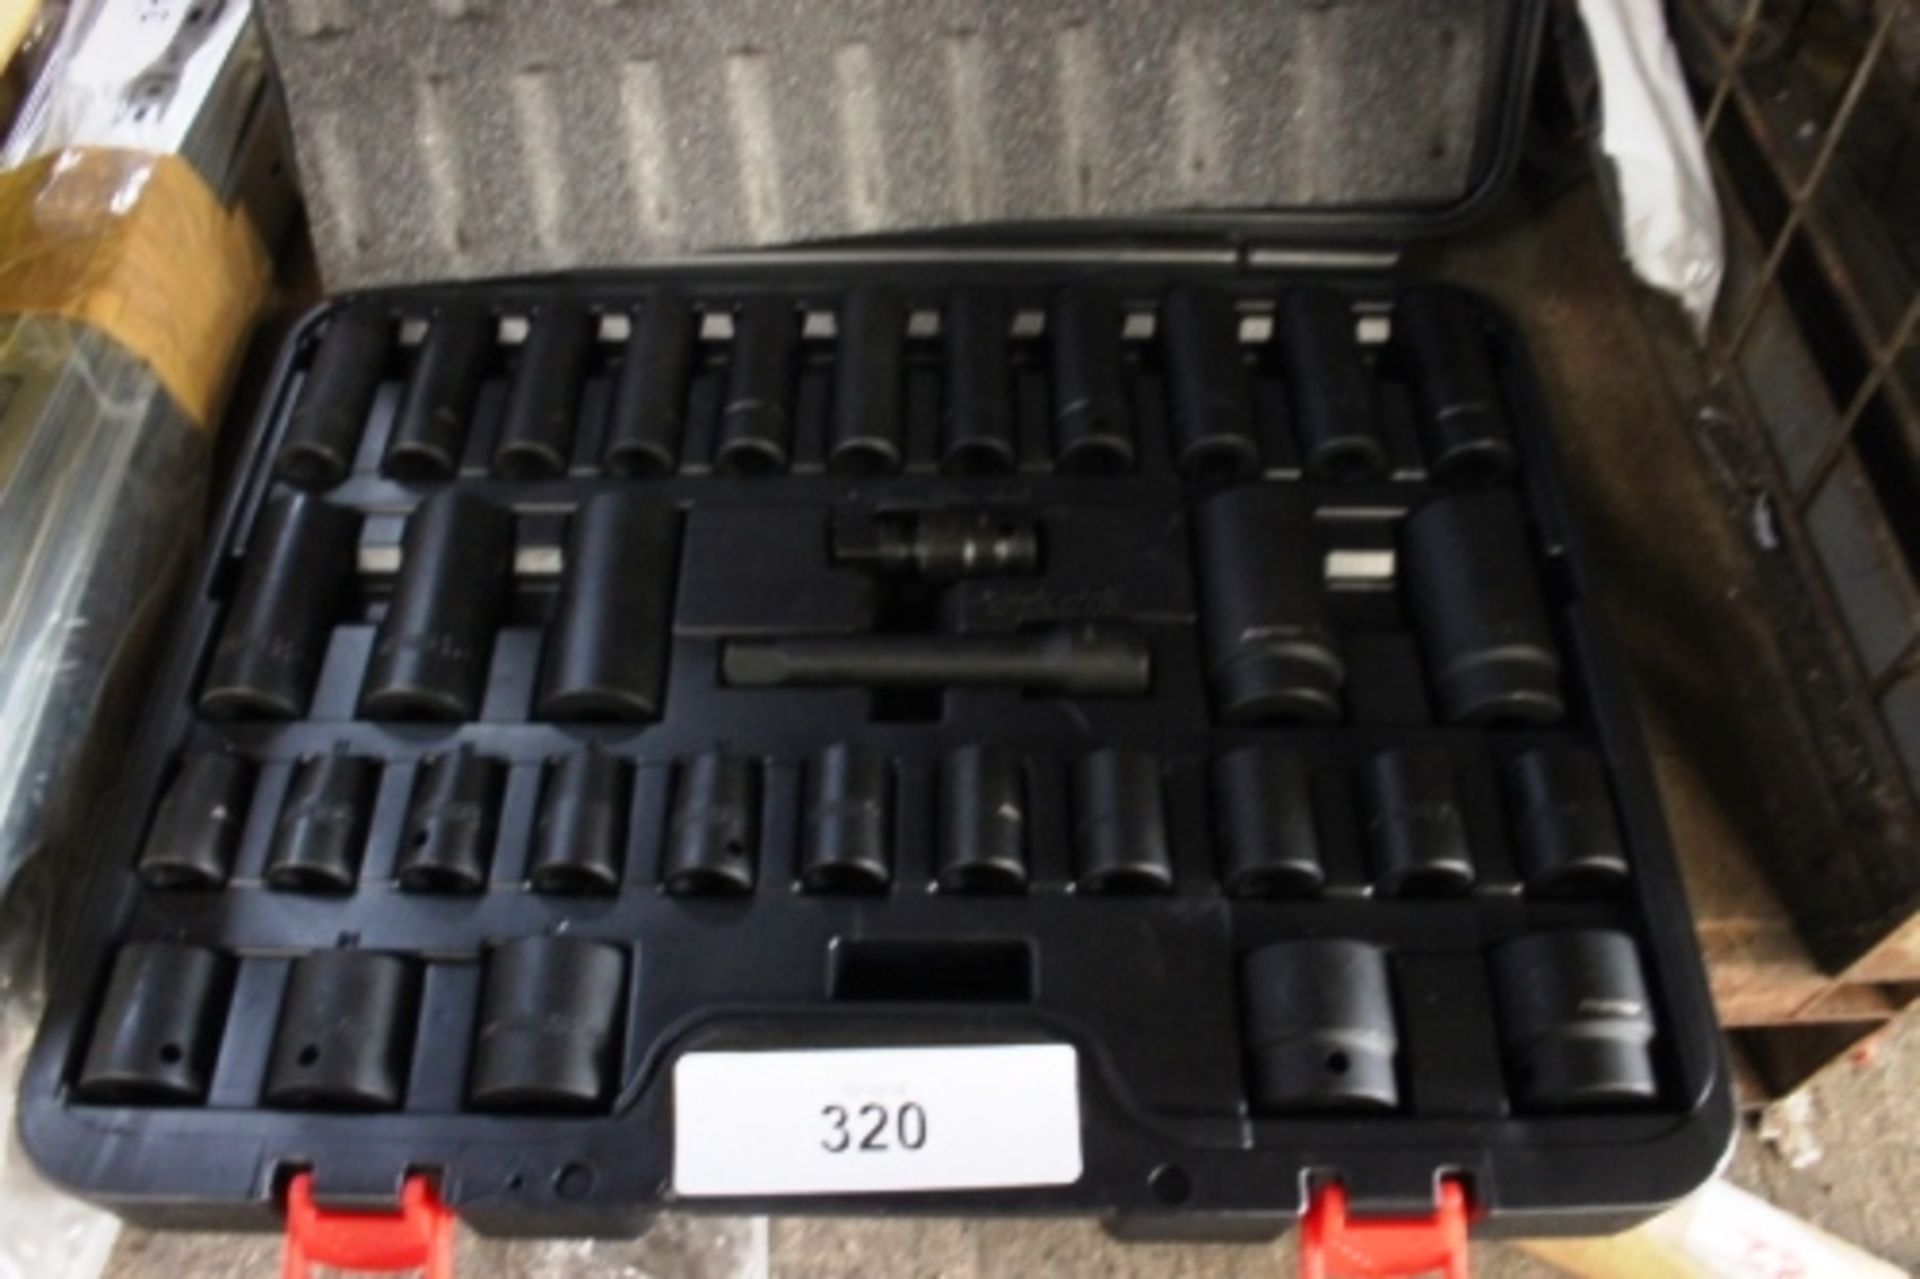 A Sealey Premier 34pc 1/2" square drive, impact socket set, model AK5634M - New in box (TC1)